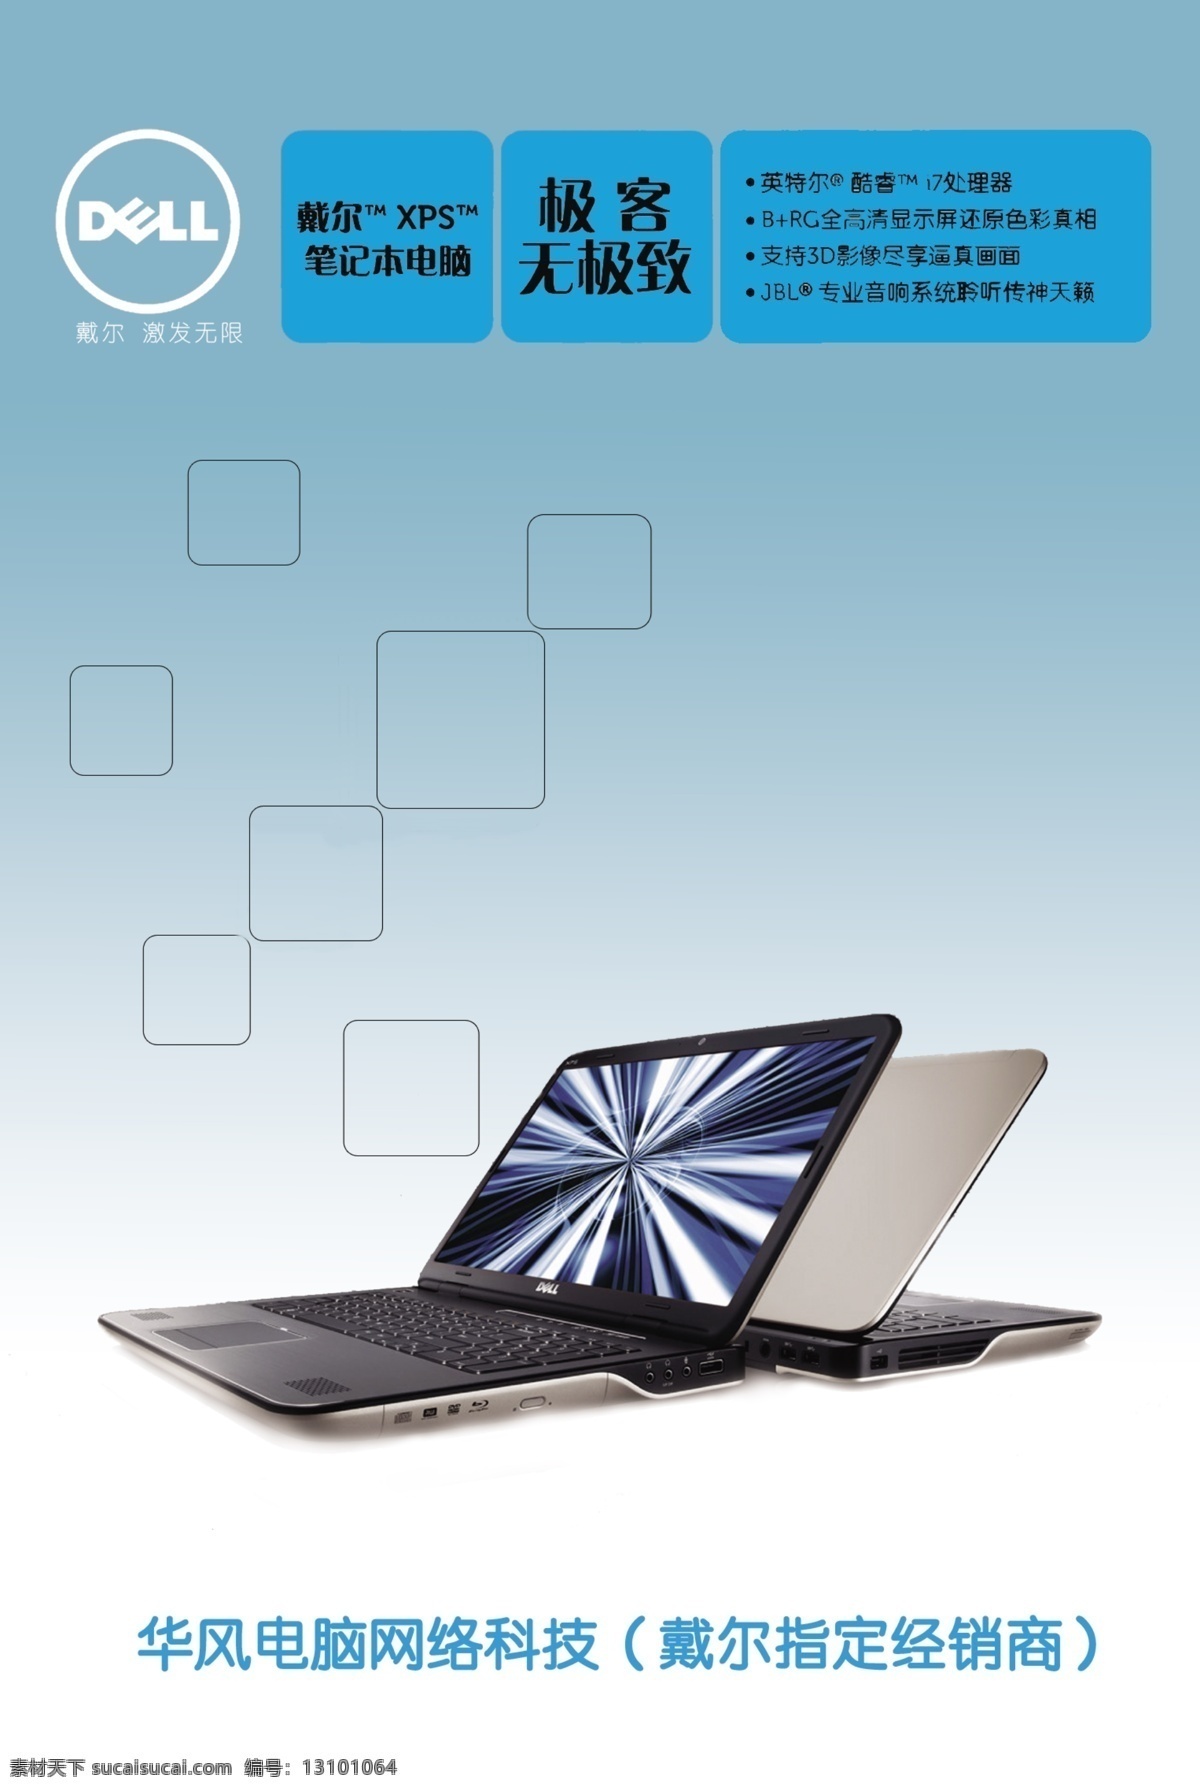 戴尔 笔记本 笔记本电脑 电子 广告设计模板 数码 源文件 戴尔笔记本 电脑 其他海报设计